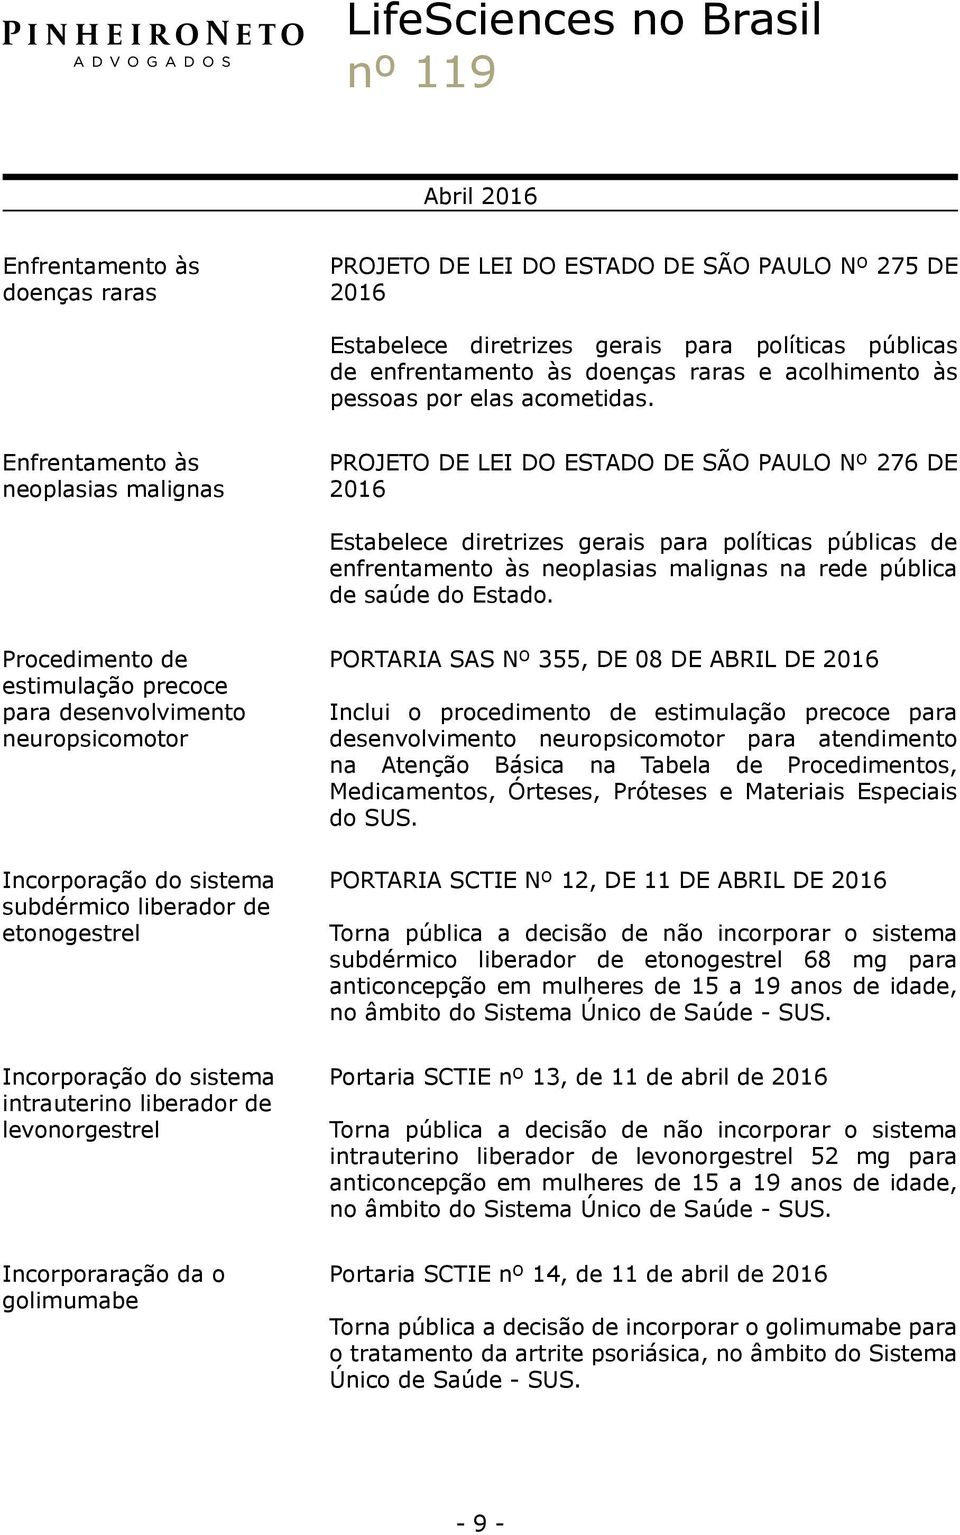 Enfrentamento às neoplasias malignas PROJETO DE LEI DO ESTADO DE SÃO PAULO Nº 276 DE Estabelece diretrizes gerais para políticas públicas de enfrentamento às neoplasias malignas na rede pública de